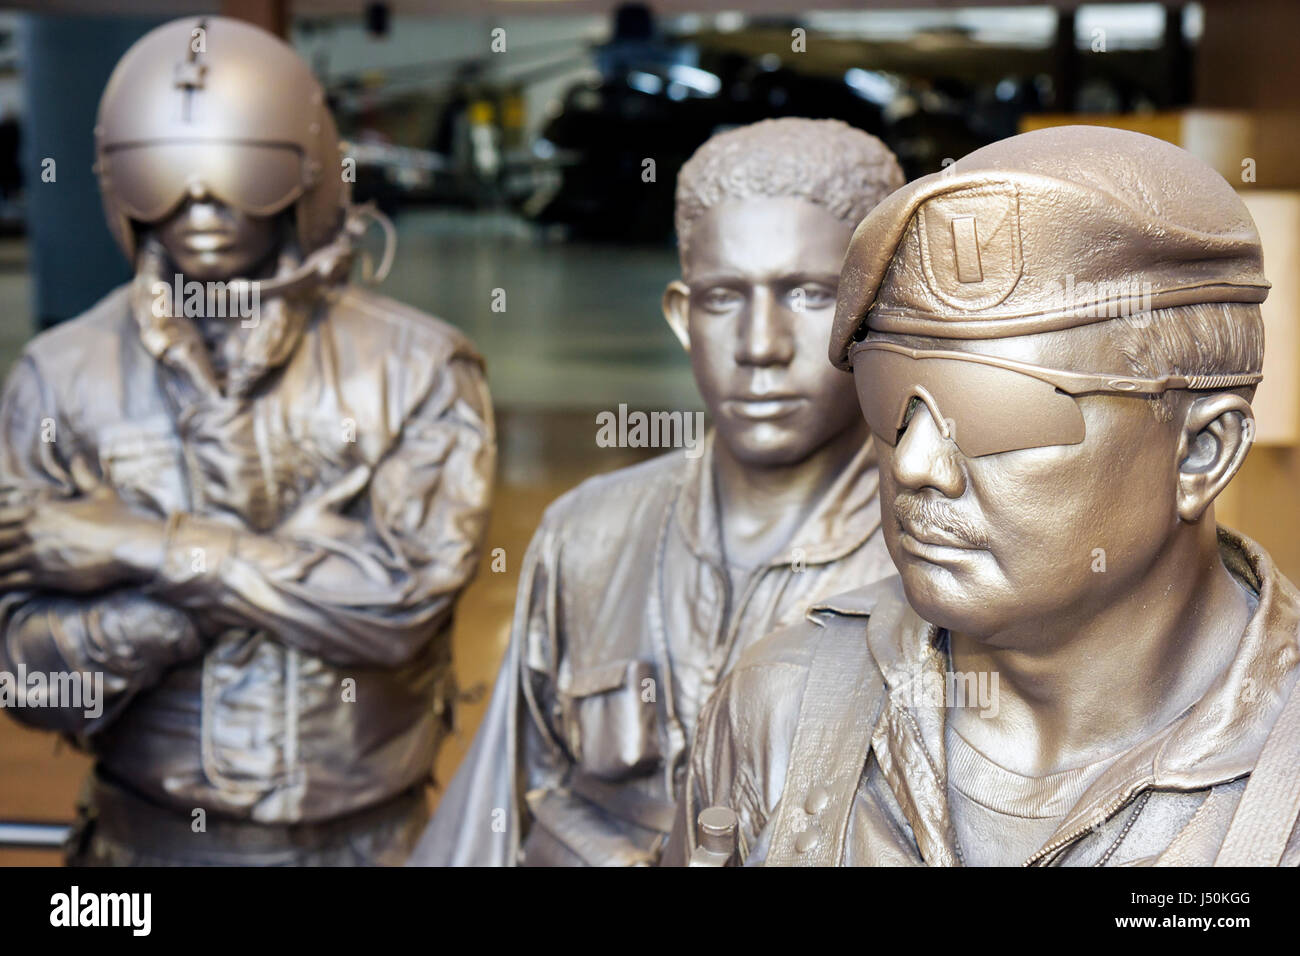 Alabama,Dale County,Ft. Fort Rucker,Museo de la Aviación del Ejército de los Estados Unidos,estatua,pilotos,soldados,aviones,militares,exposición colección de la defensa, Foto de stock